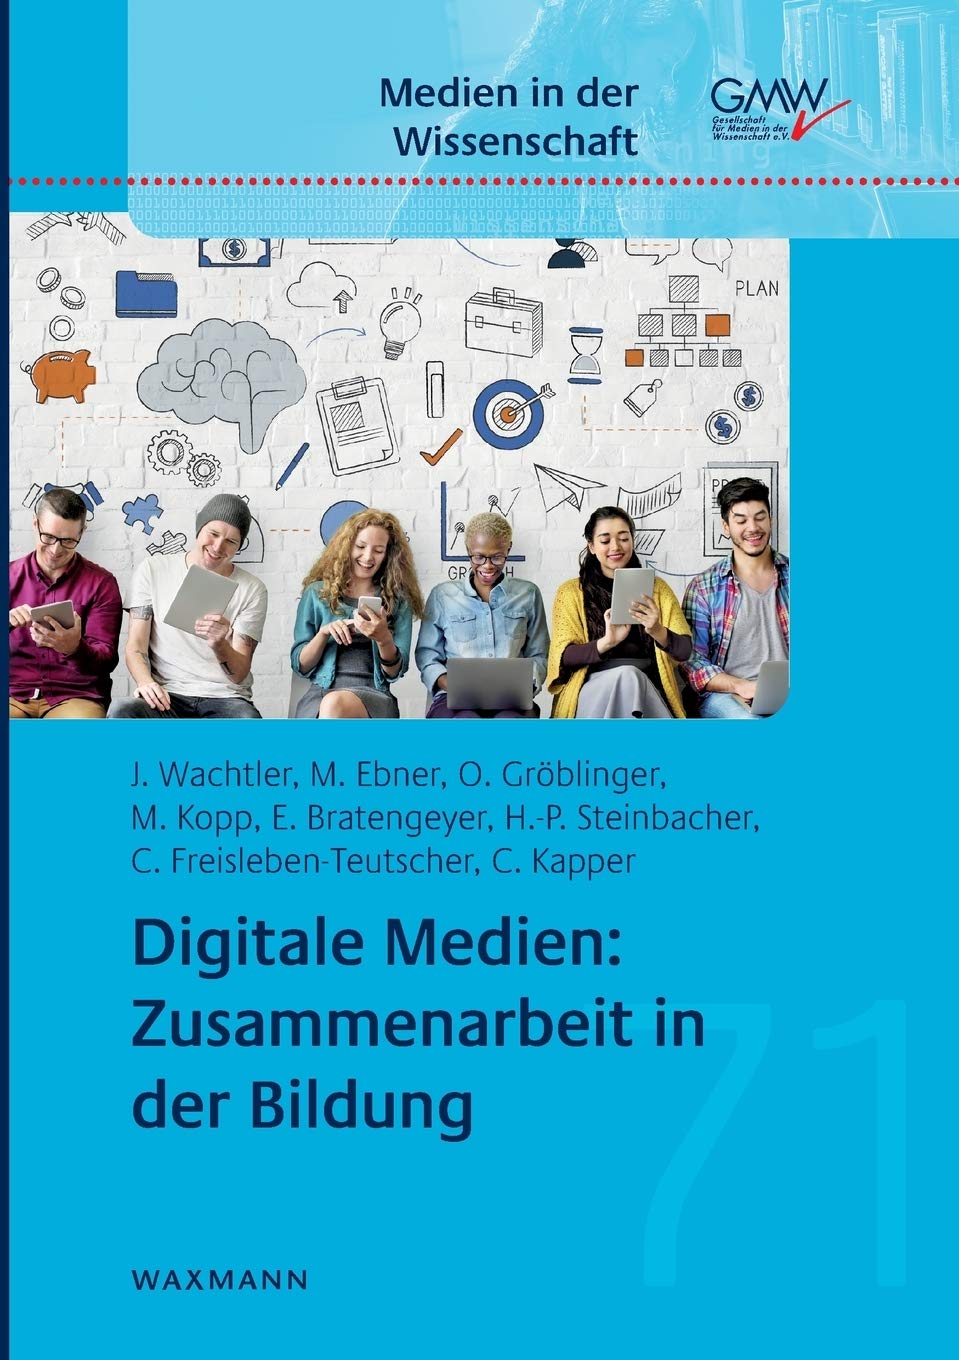 Digitale Medien: Zusammenarbeit in der Bildung (Medien in der Wissenschaft)